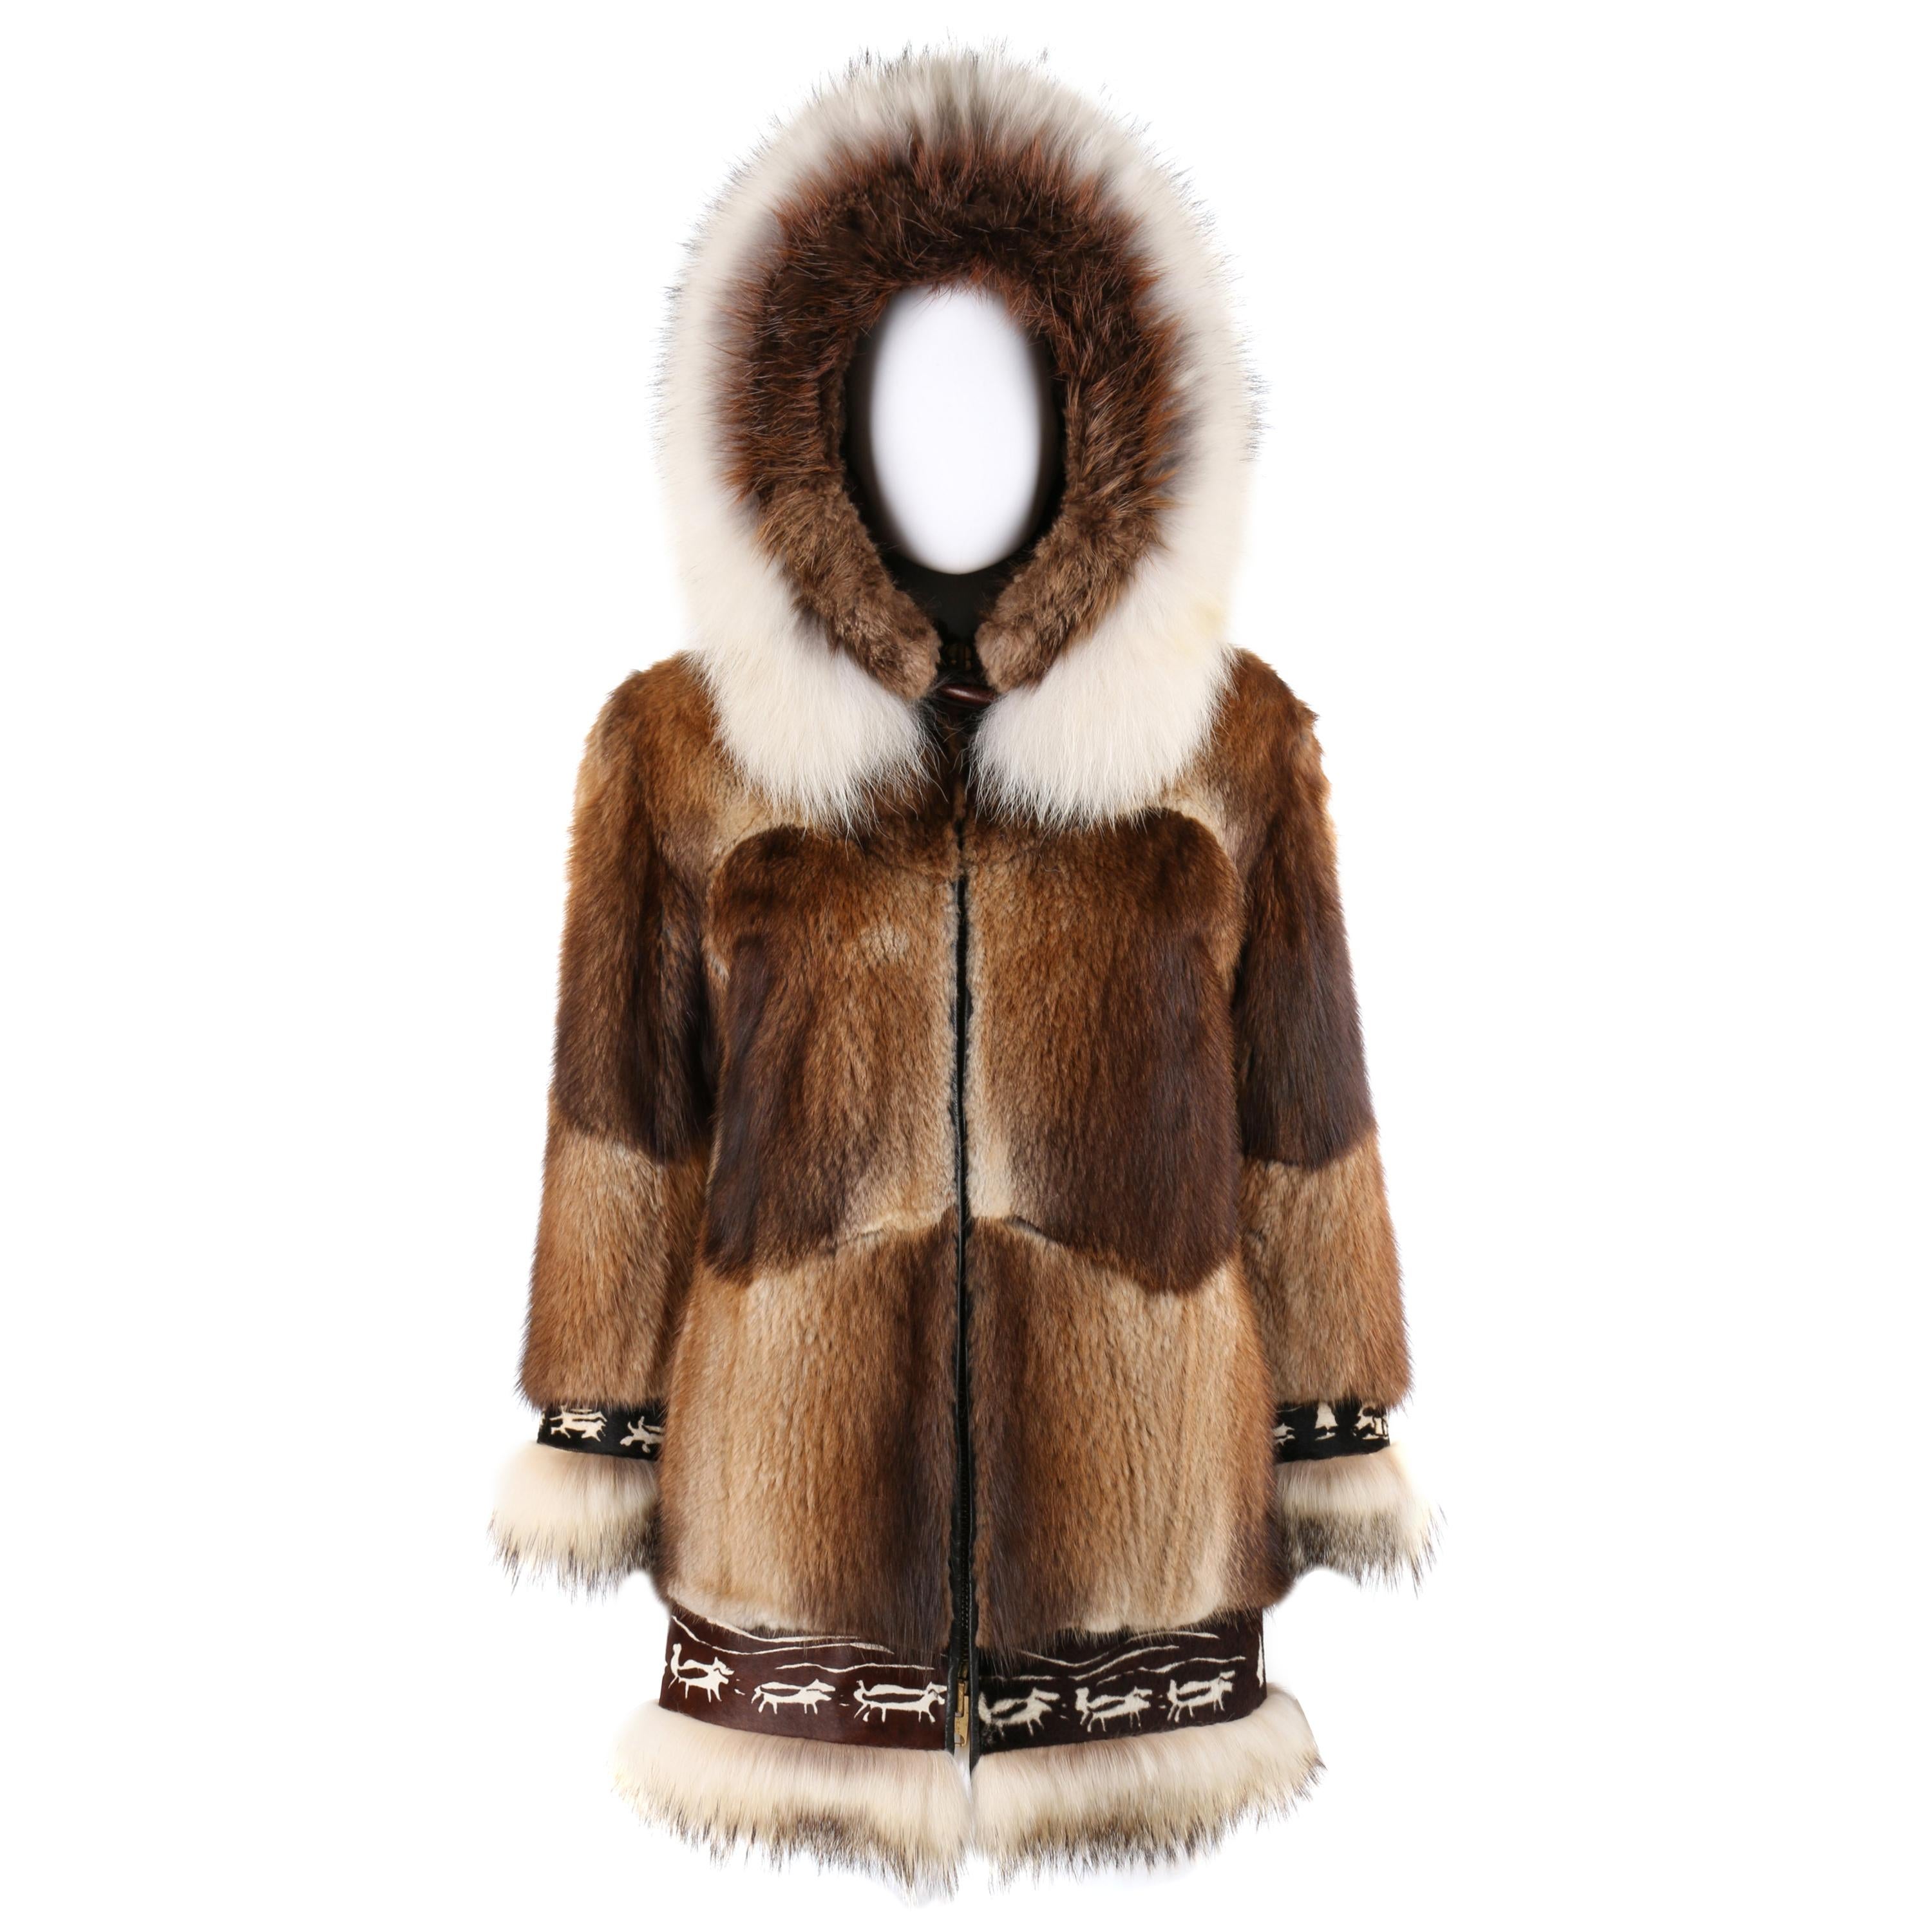 Аляска мех. Fur lined Parka in Alaska. Without fur.